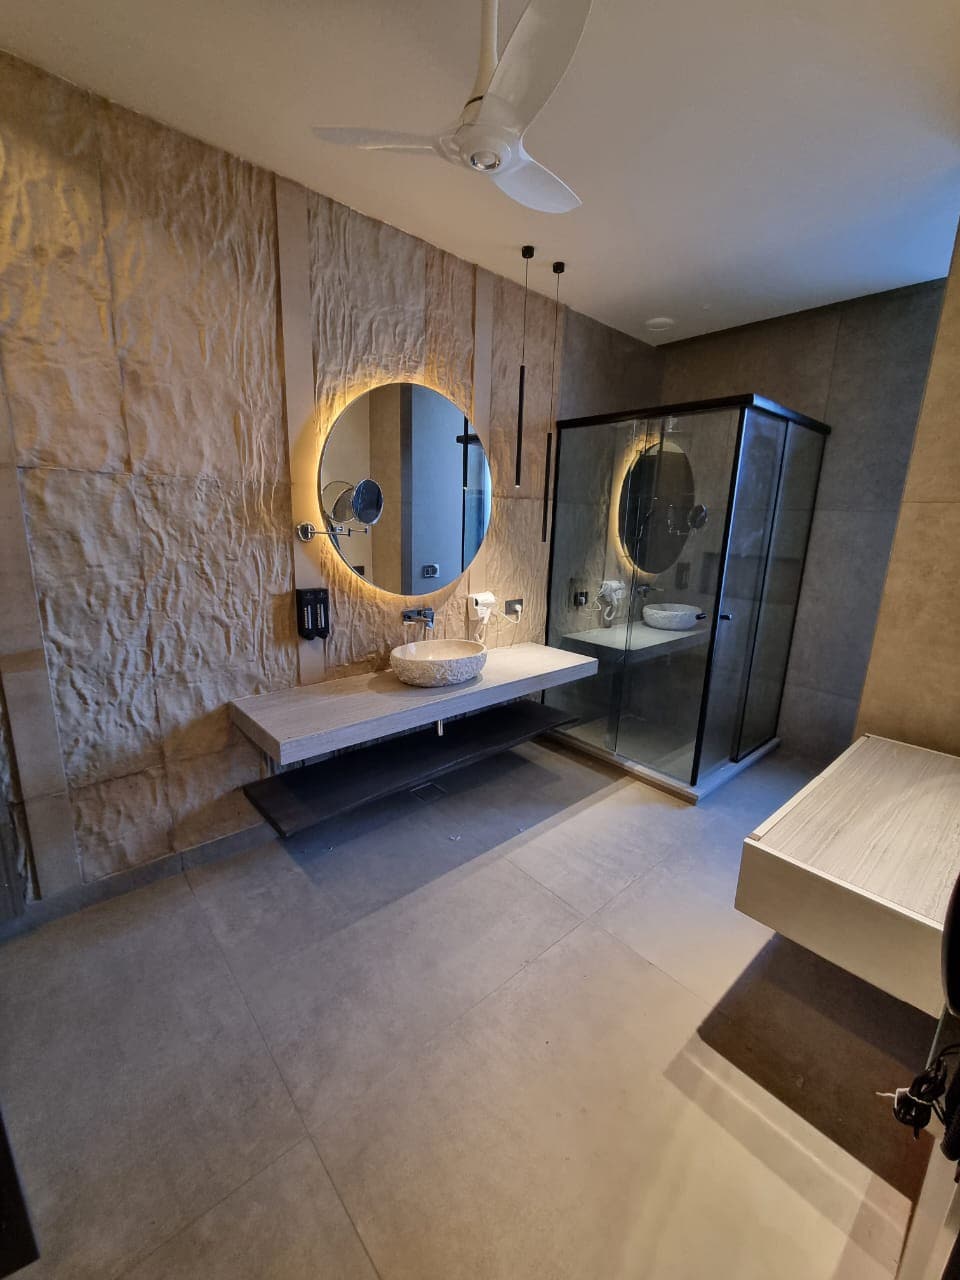 Luxury Lofts -Serene Room